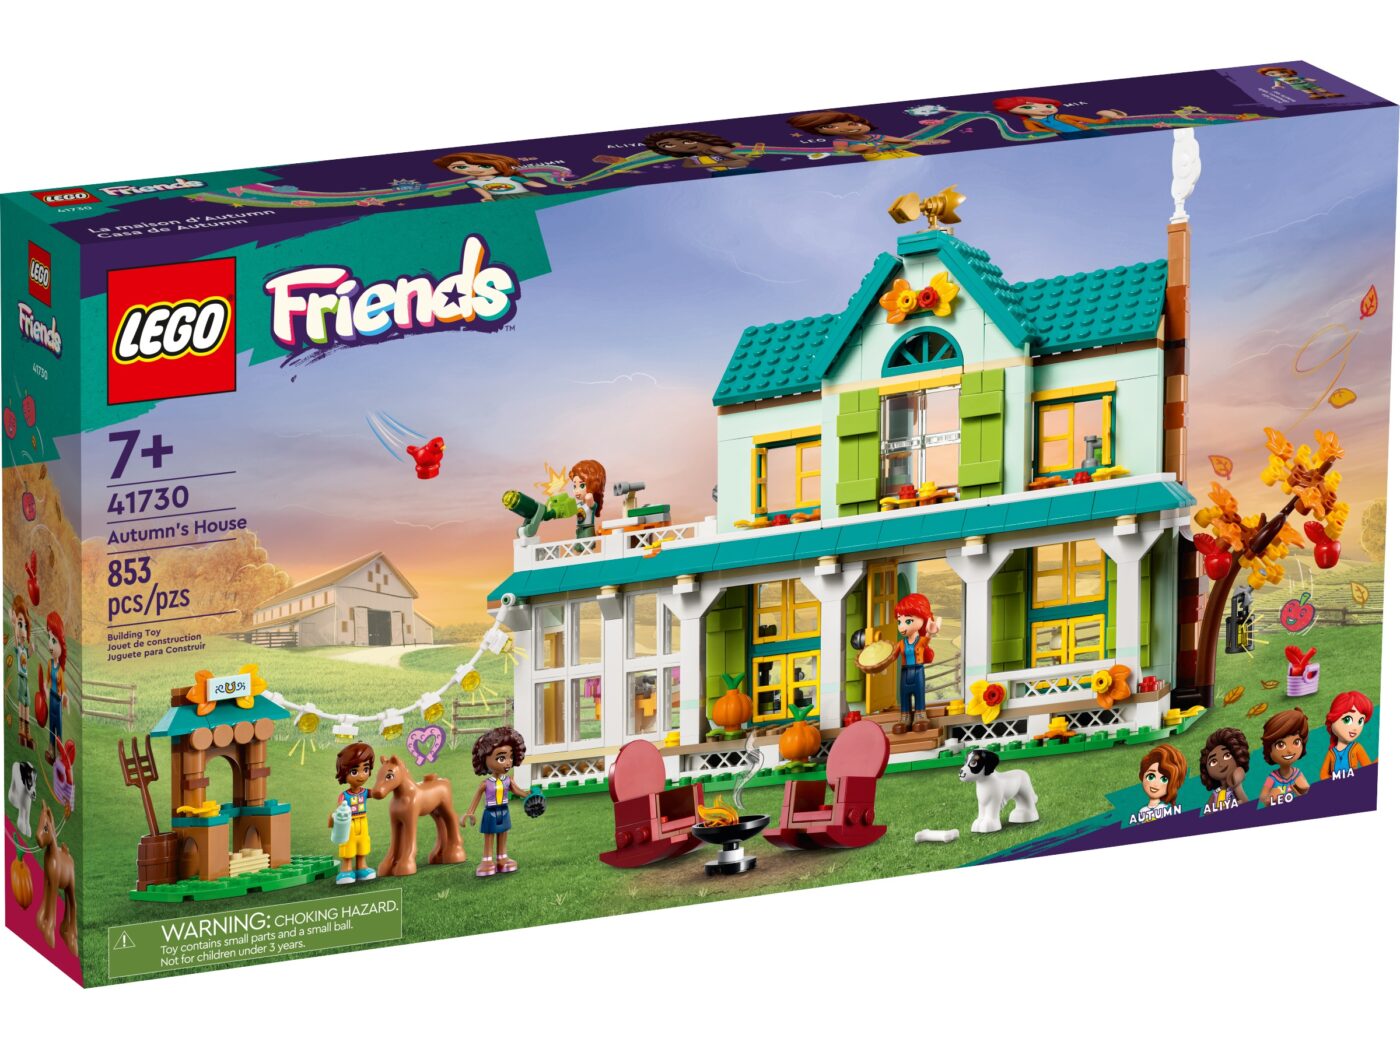 Brace porcelæn Forbyde More 2023 LEGO Friends sets revealed! - Jay's Brick Blog